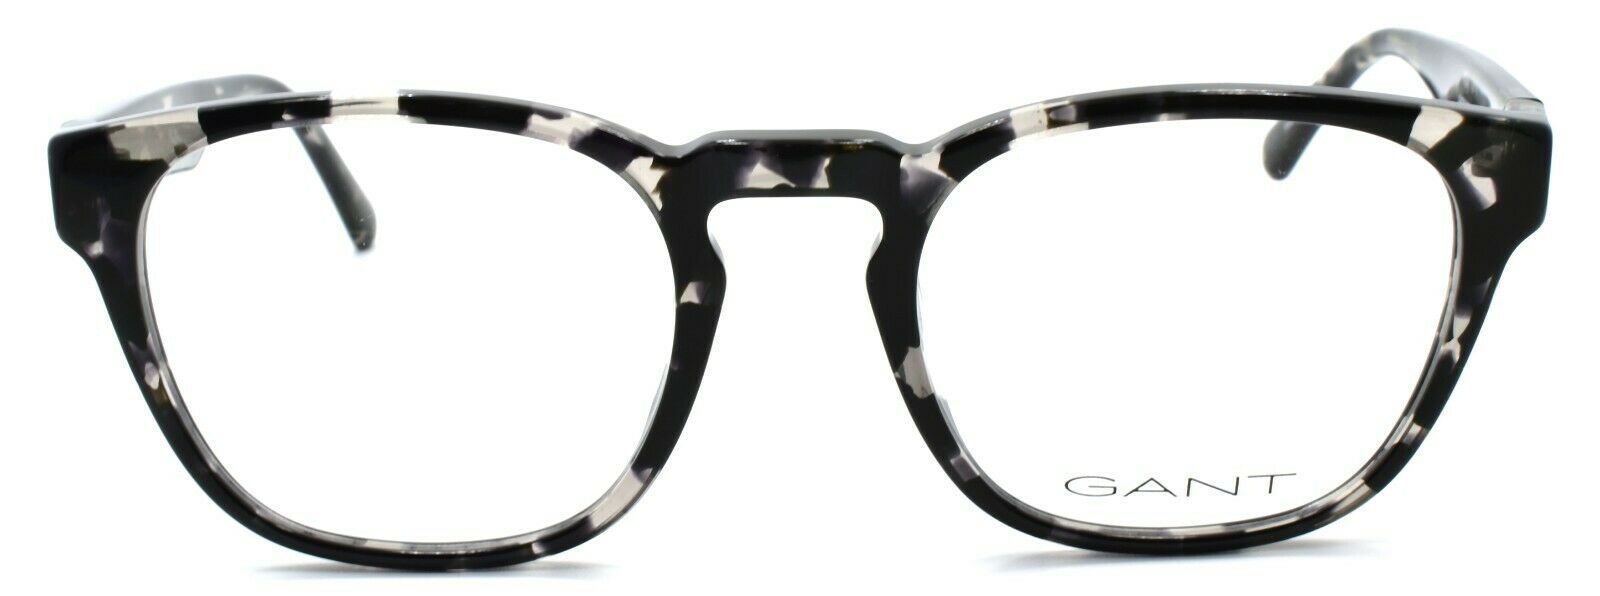 2-GANT GA3219 055 Men's Eyeglasses Frames 53-22-145 Gray Havana-889214176042-IKSpecs